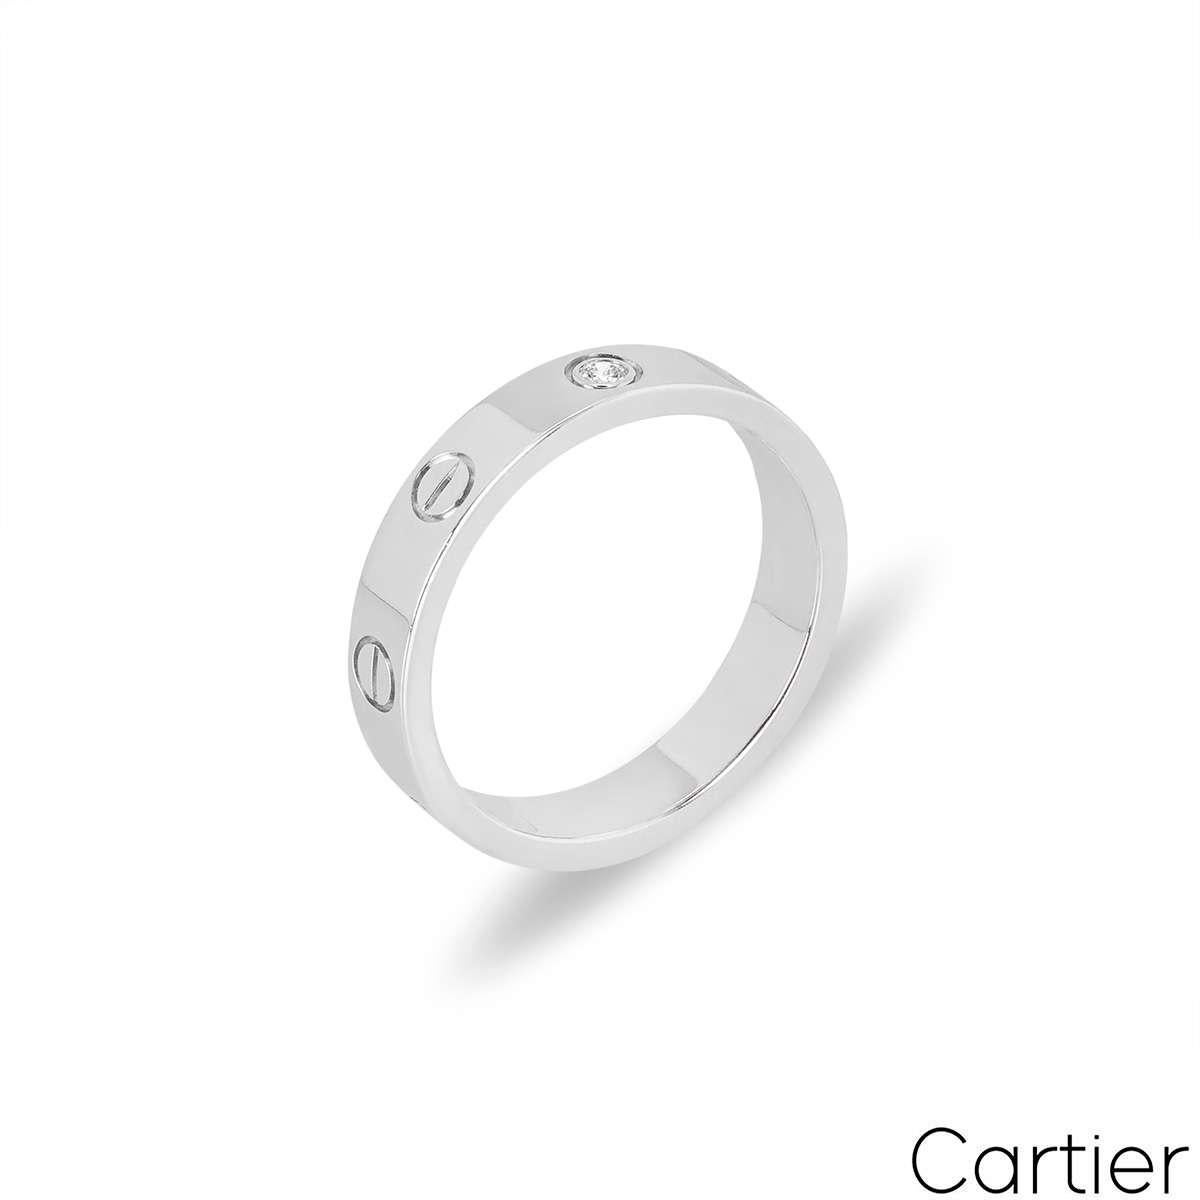 Une alliance en diamants de Cartier, en or blanc, de la collection Love. Compromettant les vis emblématiques de Cartier et un seul diamant rond de taille brillant serti au centre, d'une valeur totale de 0,02ct. Mesurant 4 mm de large, la bague